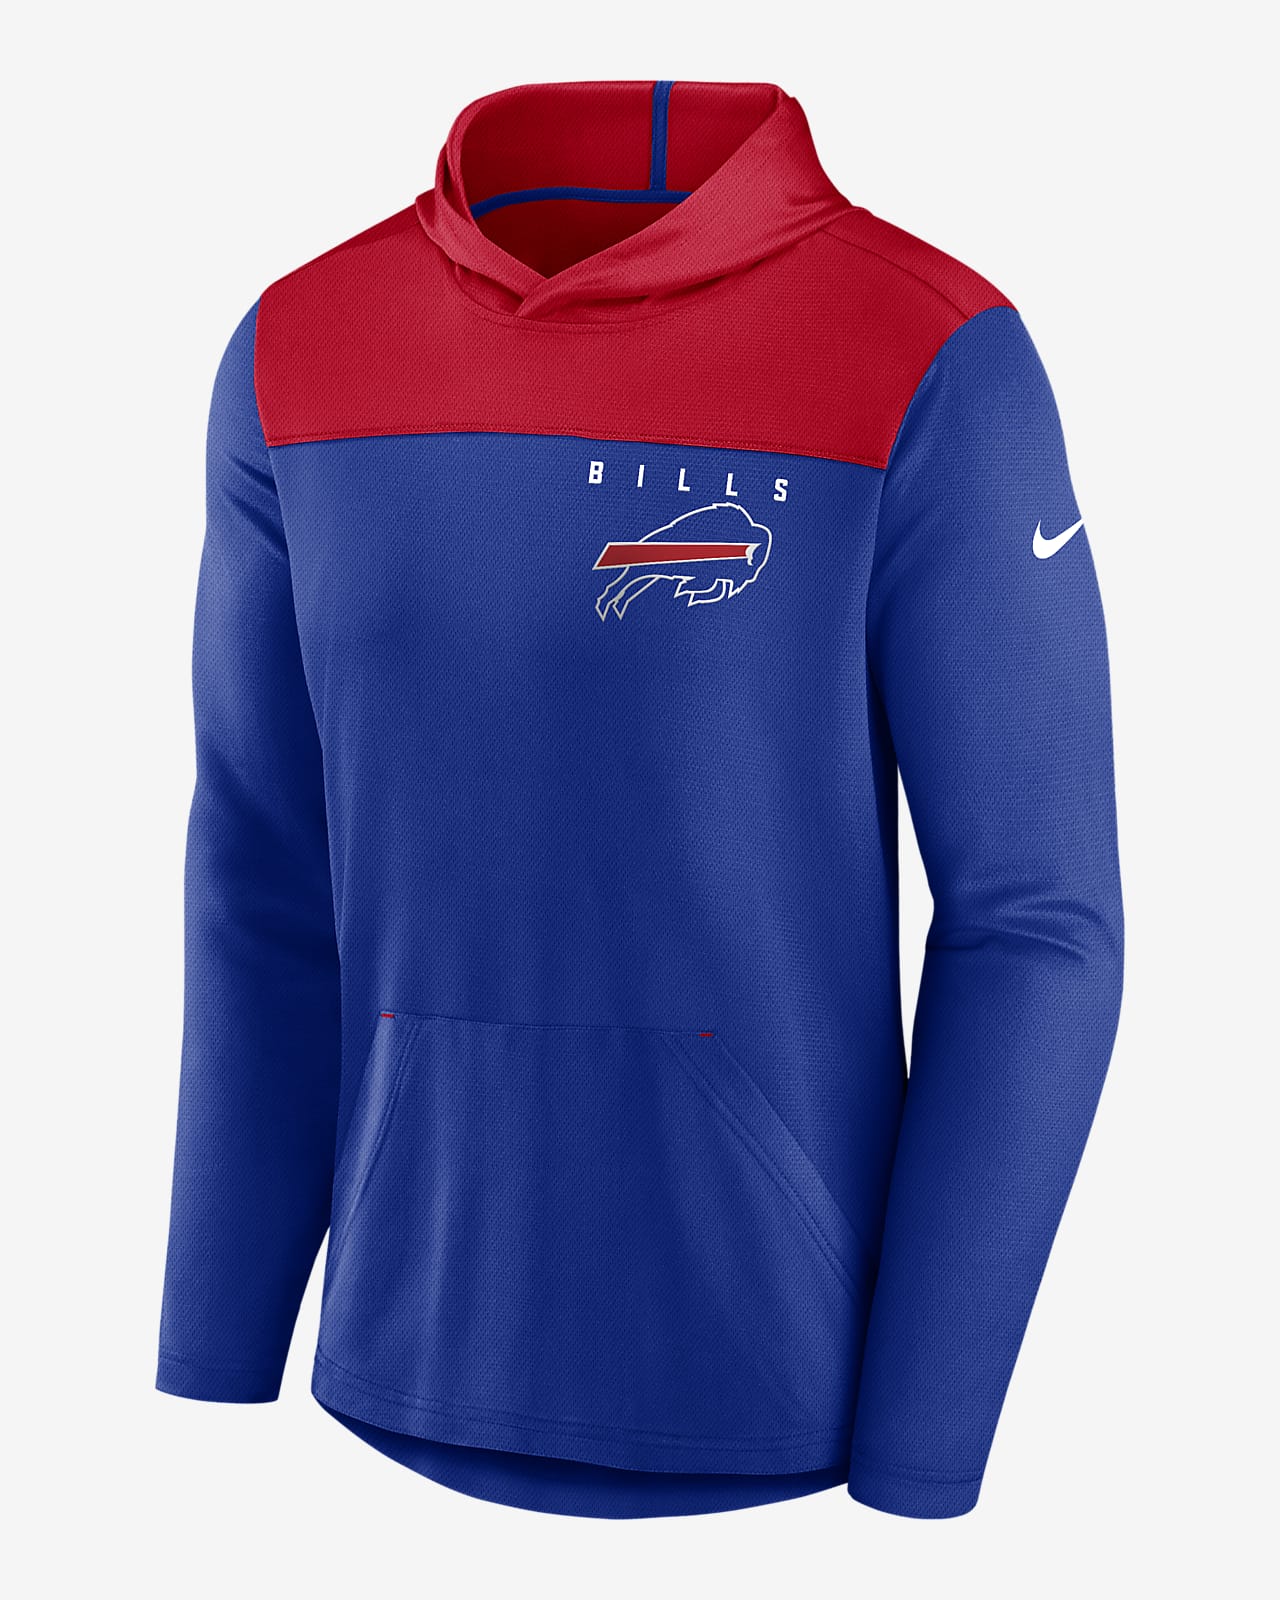 Men's Nike Royal Buffalo Bills Fan Gear Pullover Hoodie Size: Medium